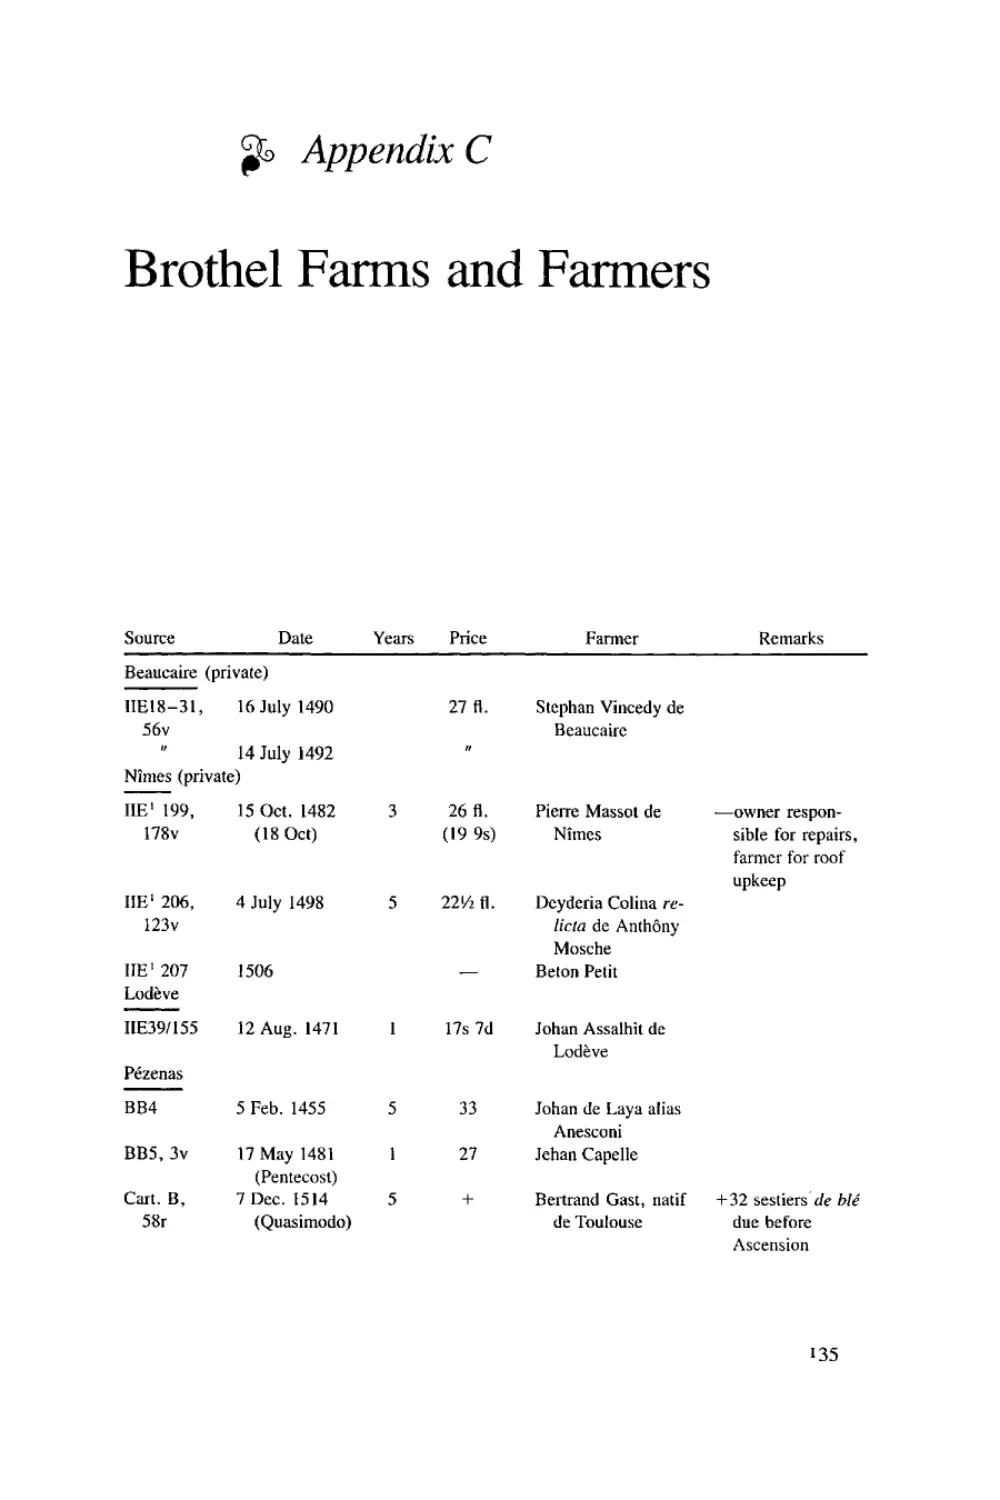 Appendix C: Brothel Farms and Farmers